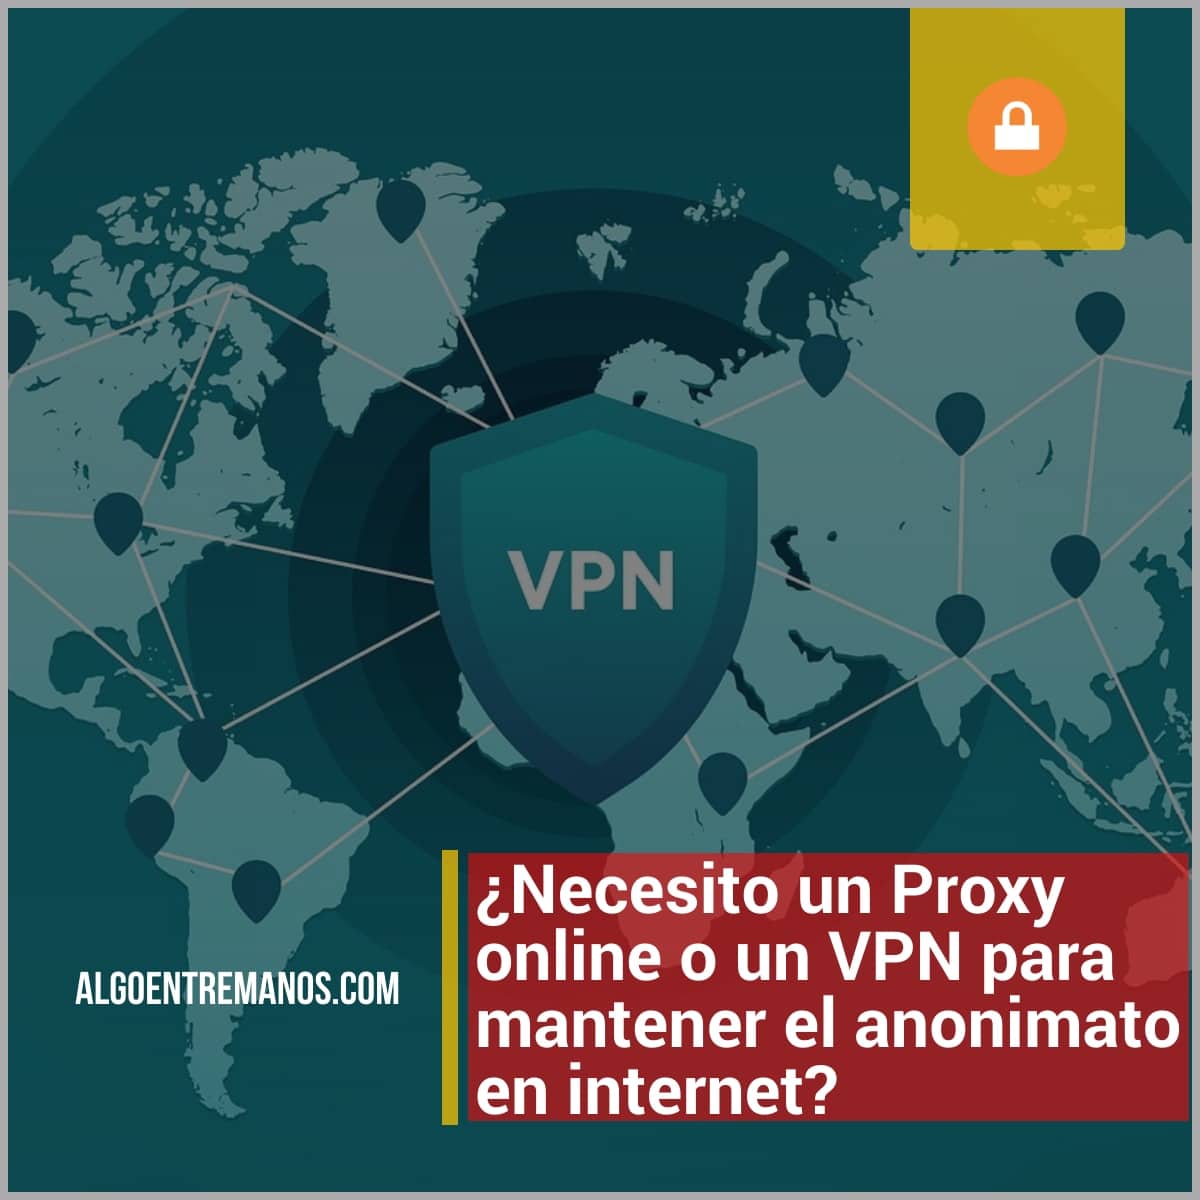 ¿Necesito un Proxy online o un VPN para mantener el anonimato en internet?